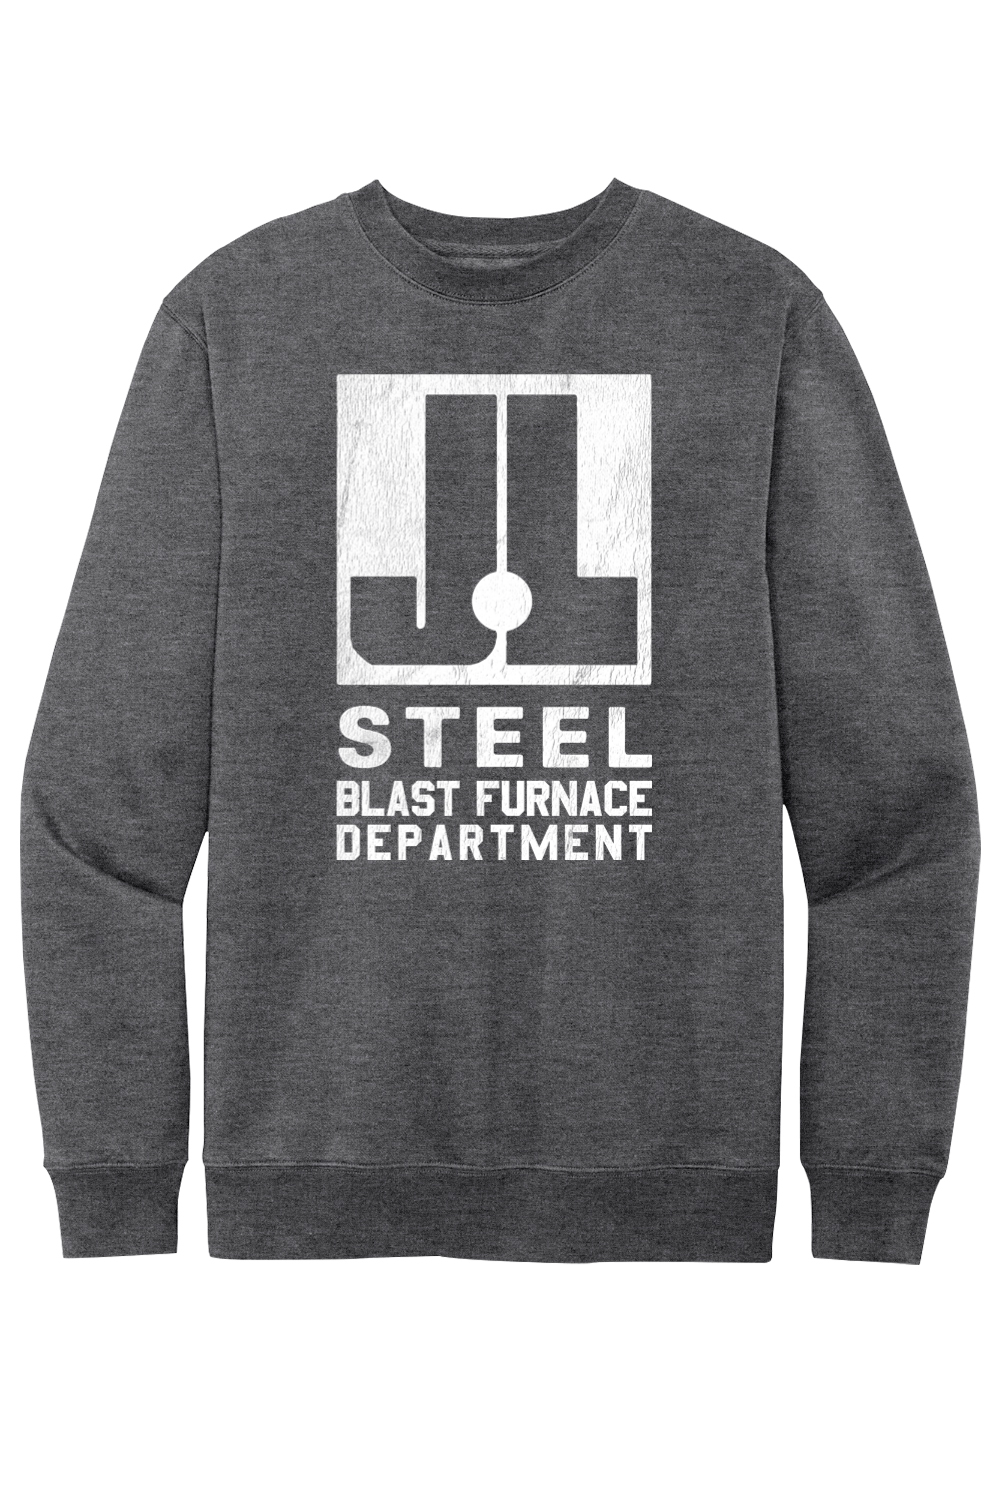 J&L Steel - Blast Furnace Department - Fleece Crew Sweatshirt - Yinzylvania